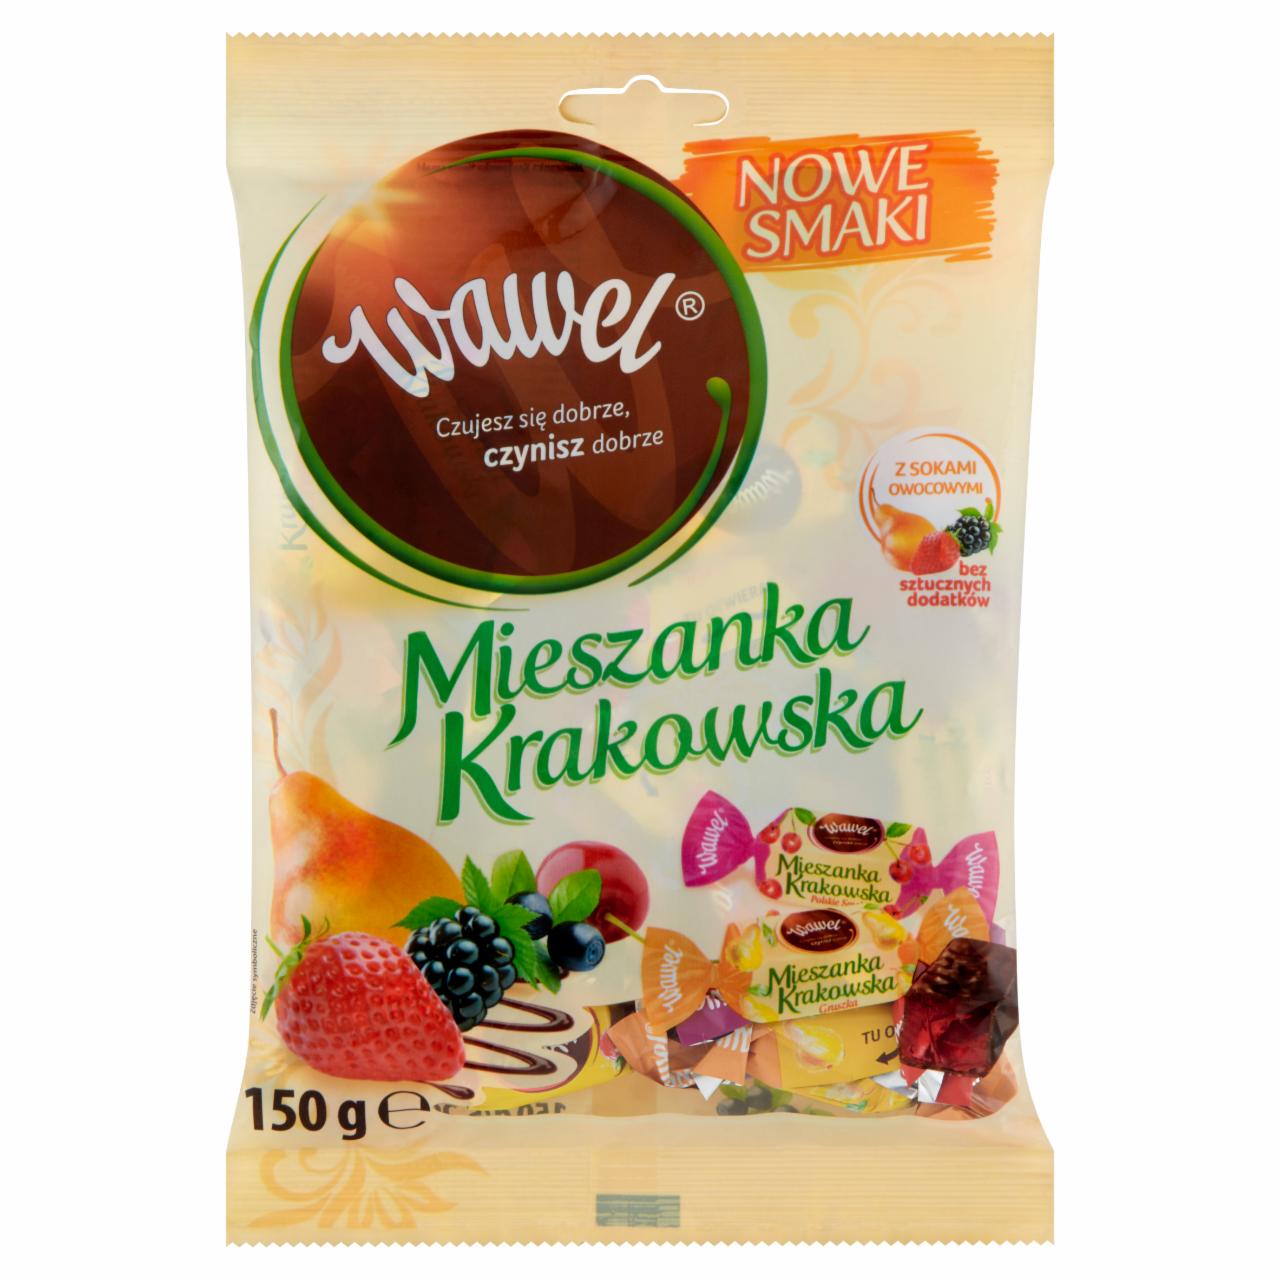 Zdjęcia - Wawel Mieszanka Krakowska Nowe smaki Galaretki w czekoladzie 150 g